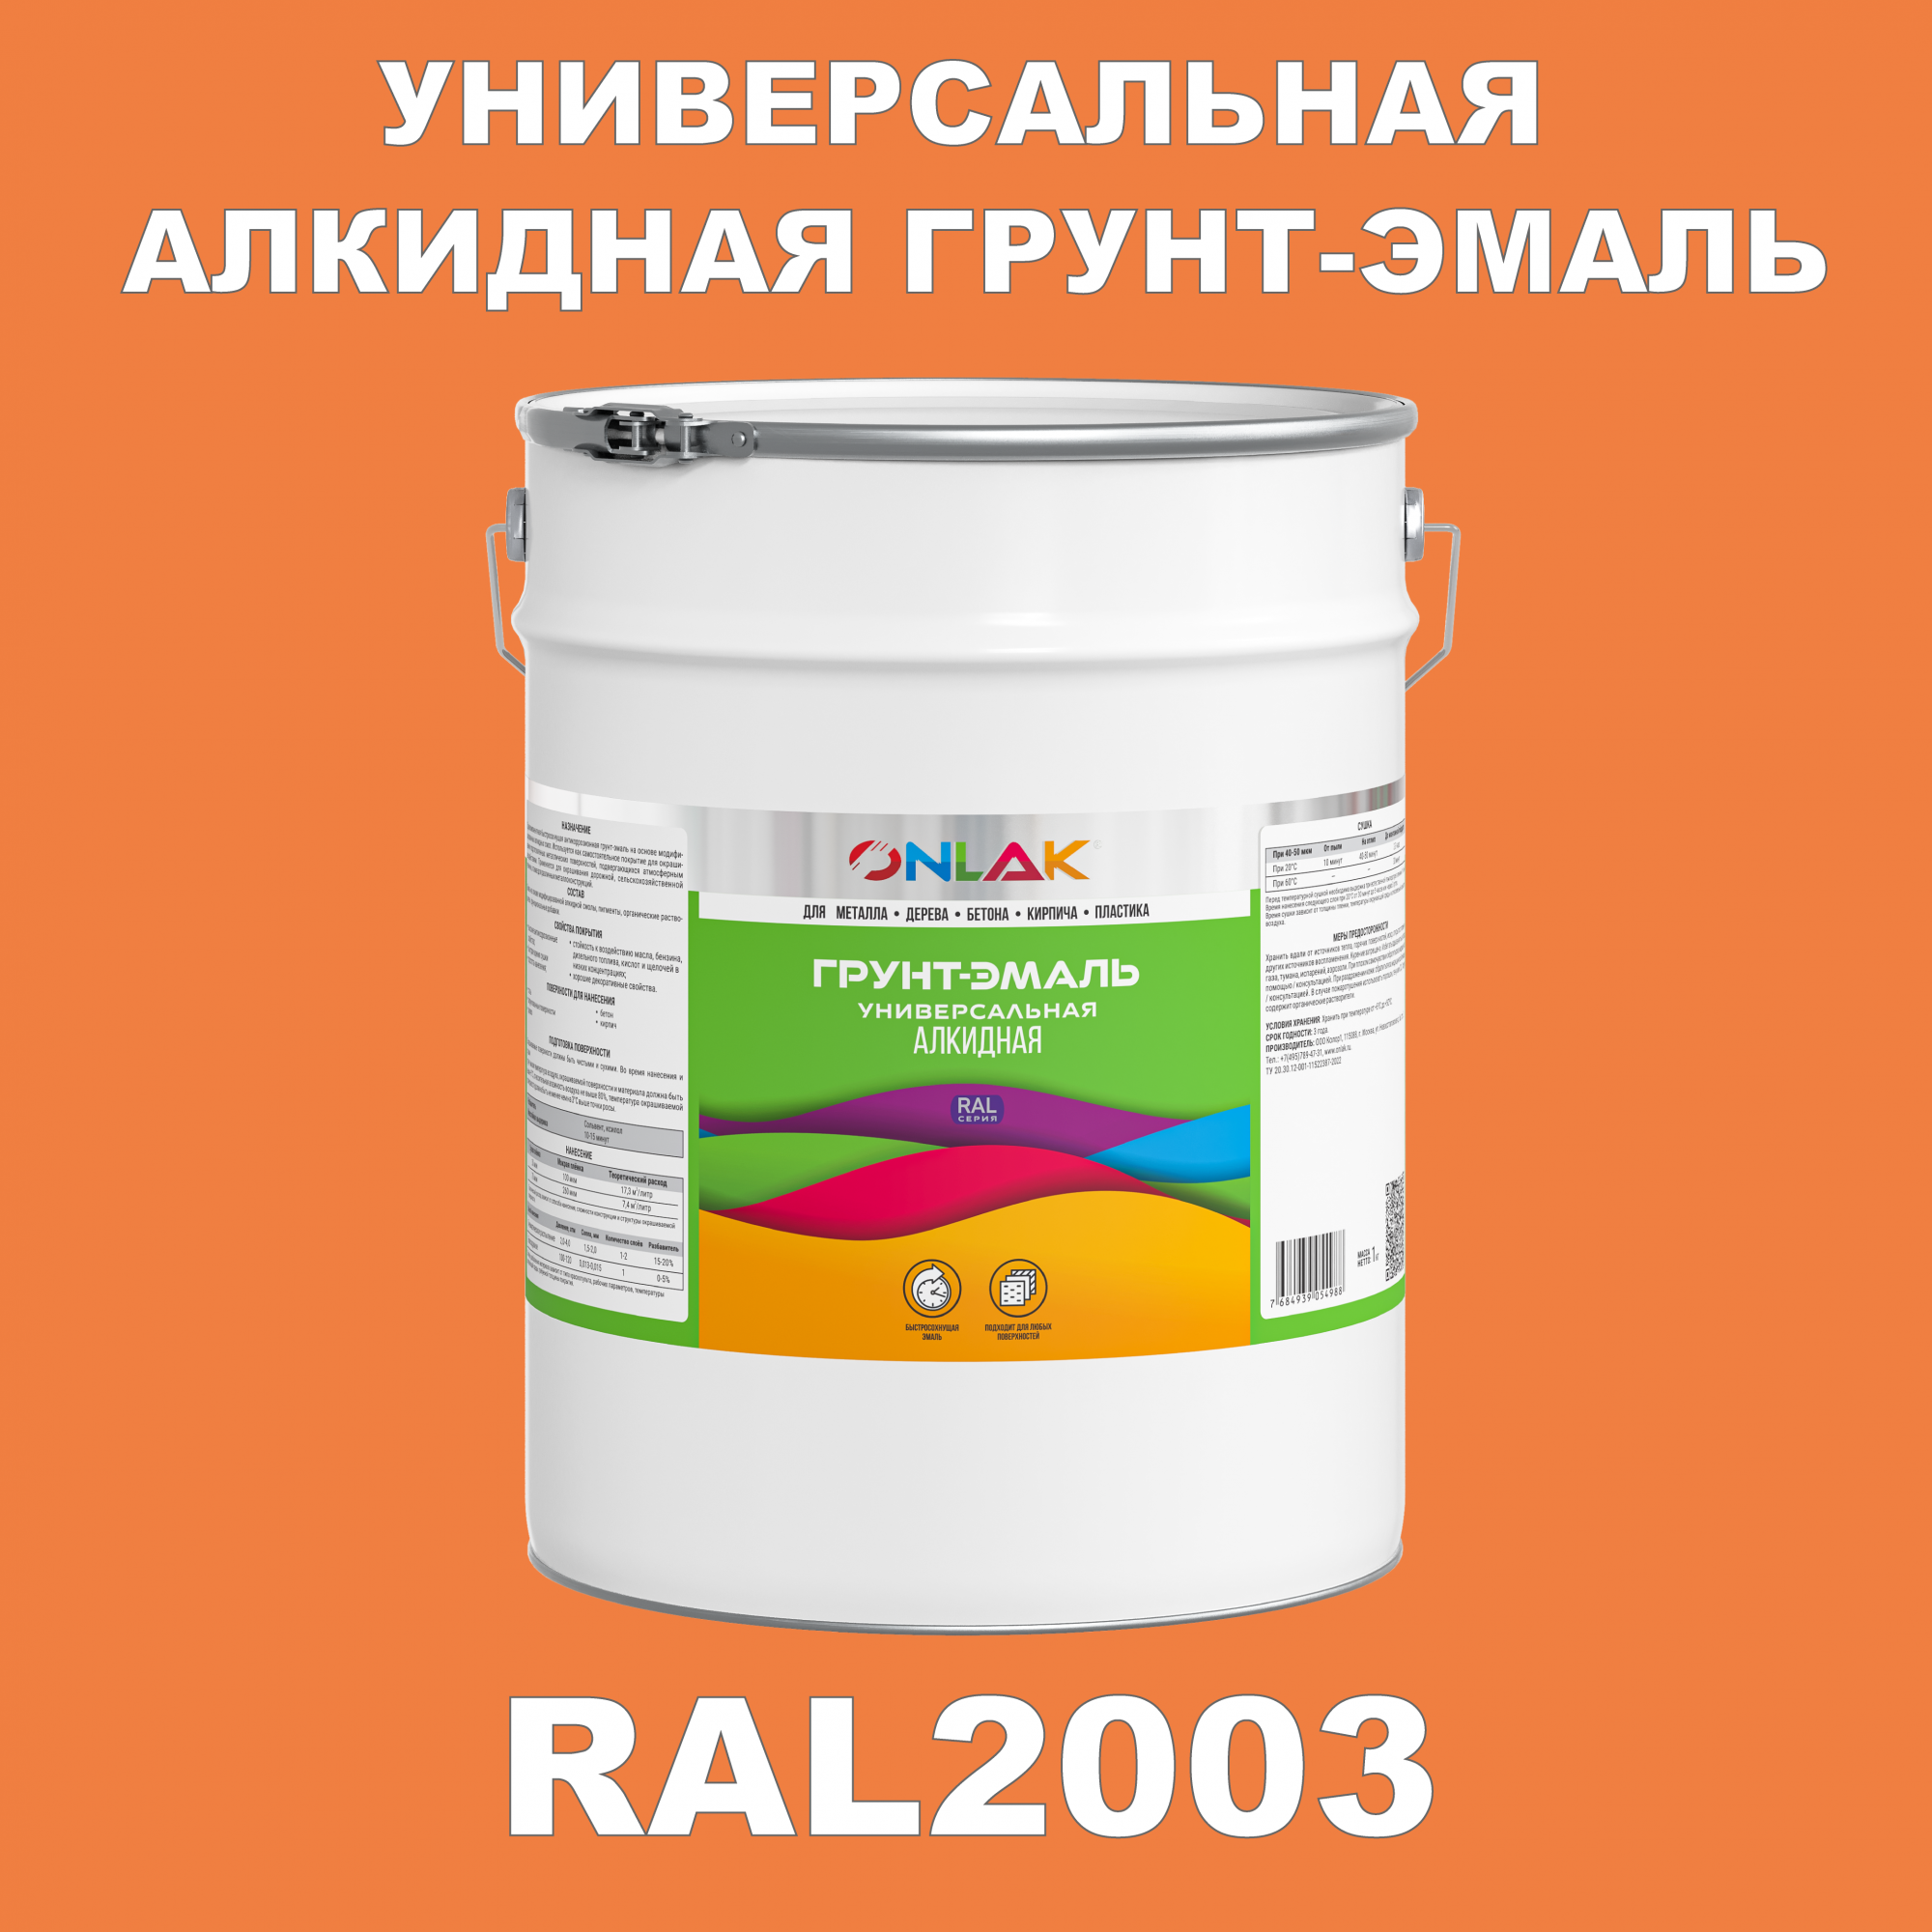 Грунт-эмаль ONLAK 1К RAL2003 антикоррозионная алкидная по металлу по ржавчине 20 кг грунт эмаль yollo по ржавчине алкидная зеленая 0 9 кг